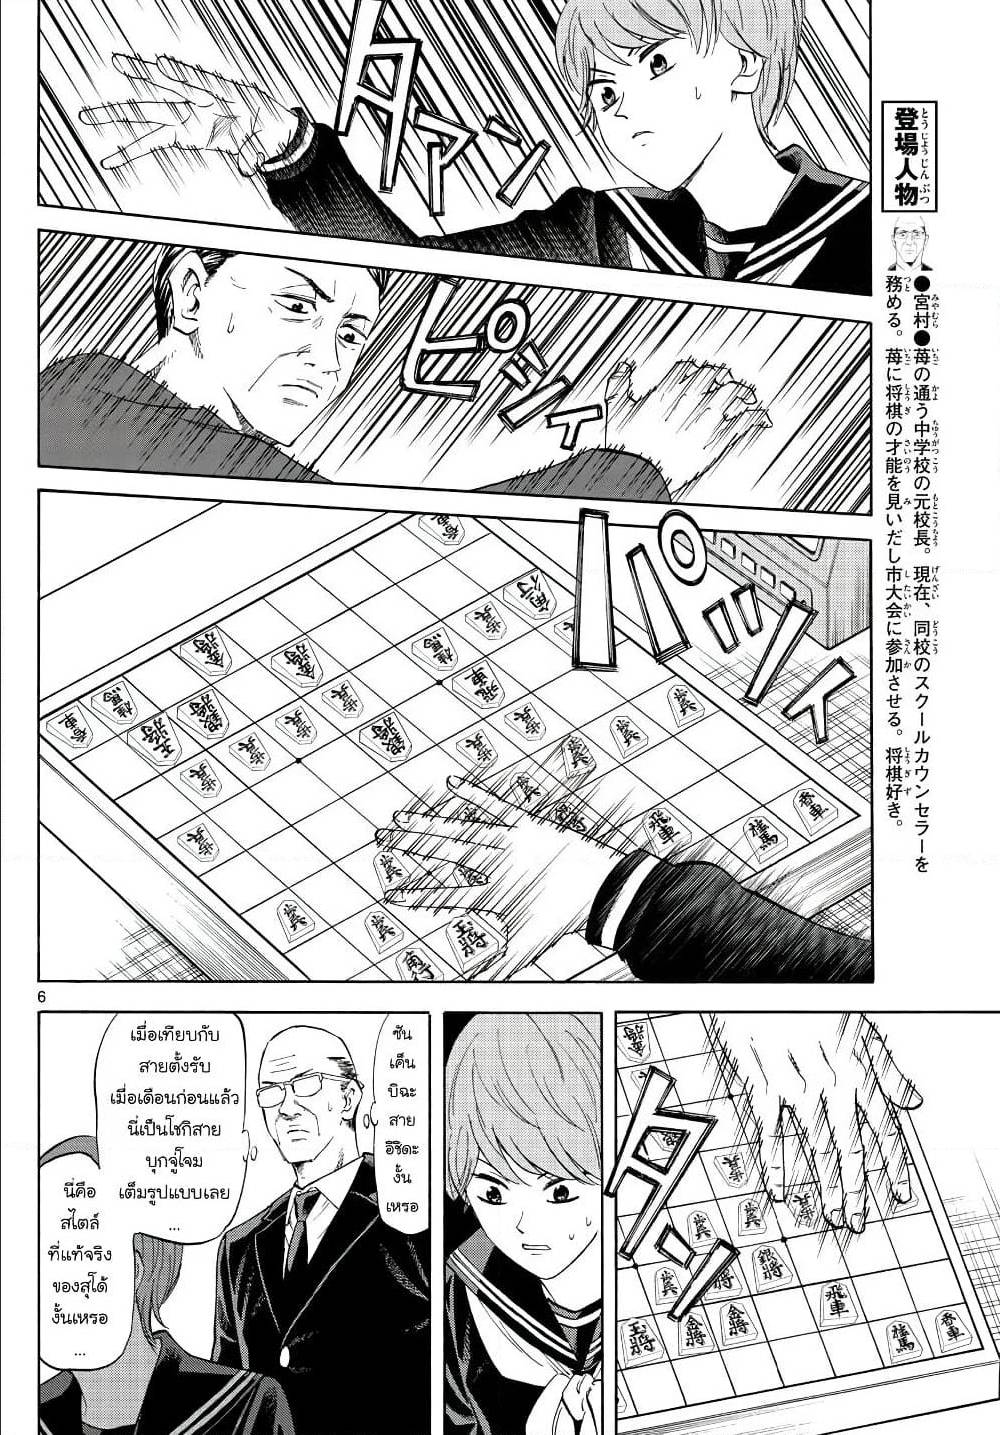 Ryuu to Ichigo 14 (6)